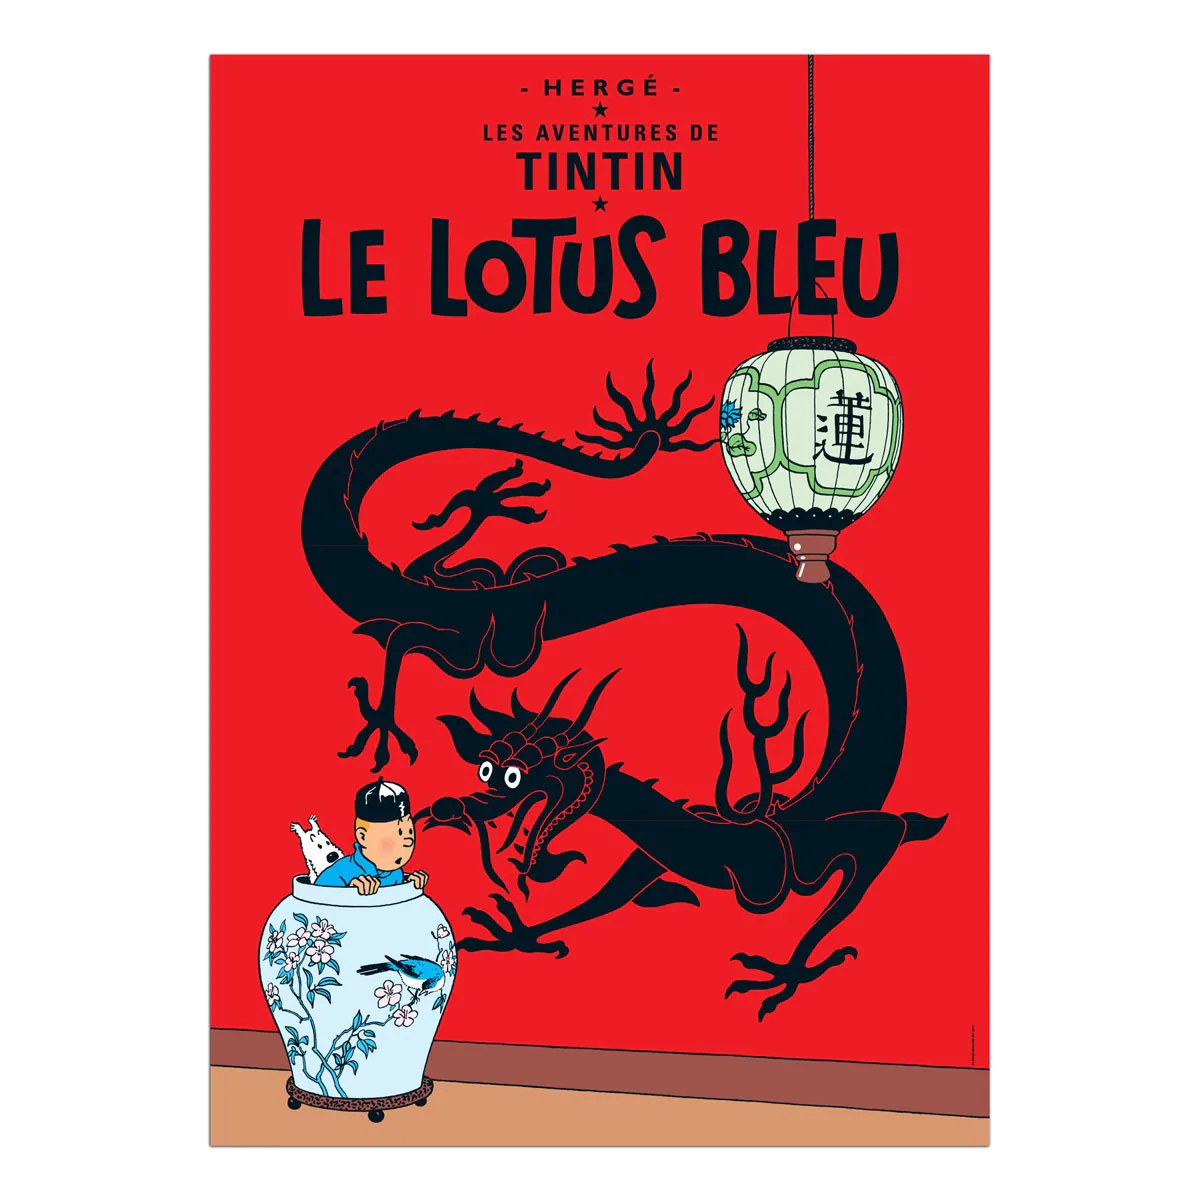 Tintin Posters - The Lotus Blue - Tintin - Brand_Tintin - Collectibles - Home_Decor - Home_French Nostalgia - Tintin - posters-fr-2015-5_1200_1TheLotusBlue